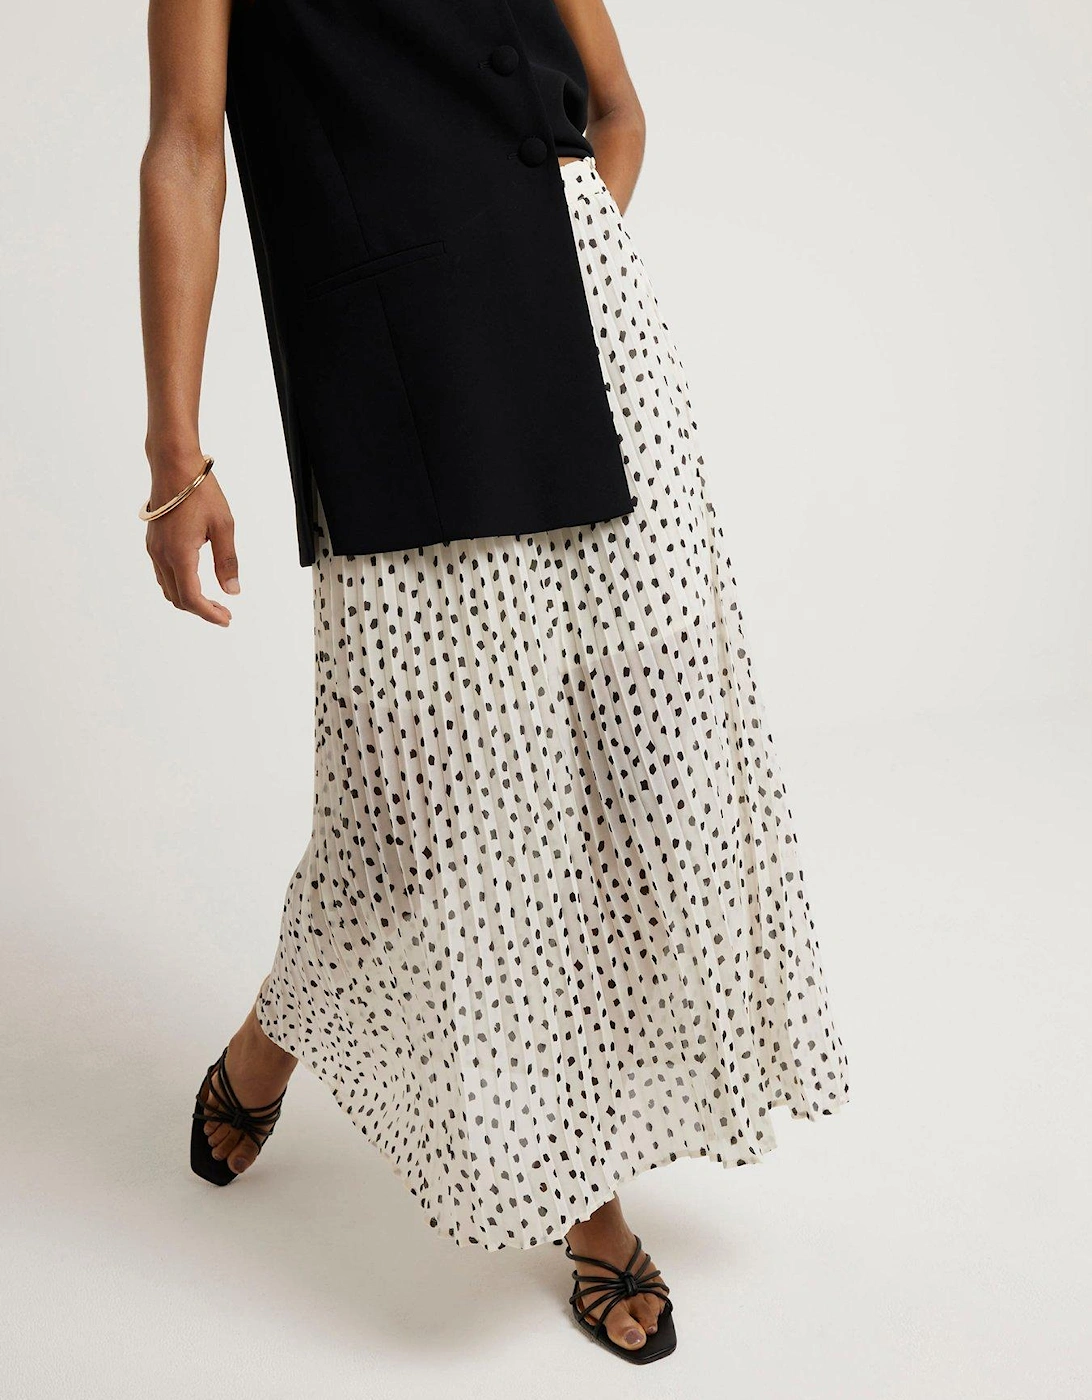 Polka Dot Pleated Skirt - White, 6 of 5